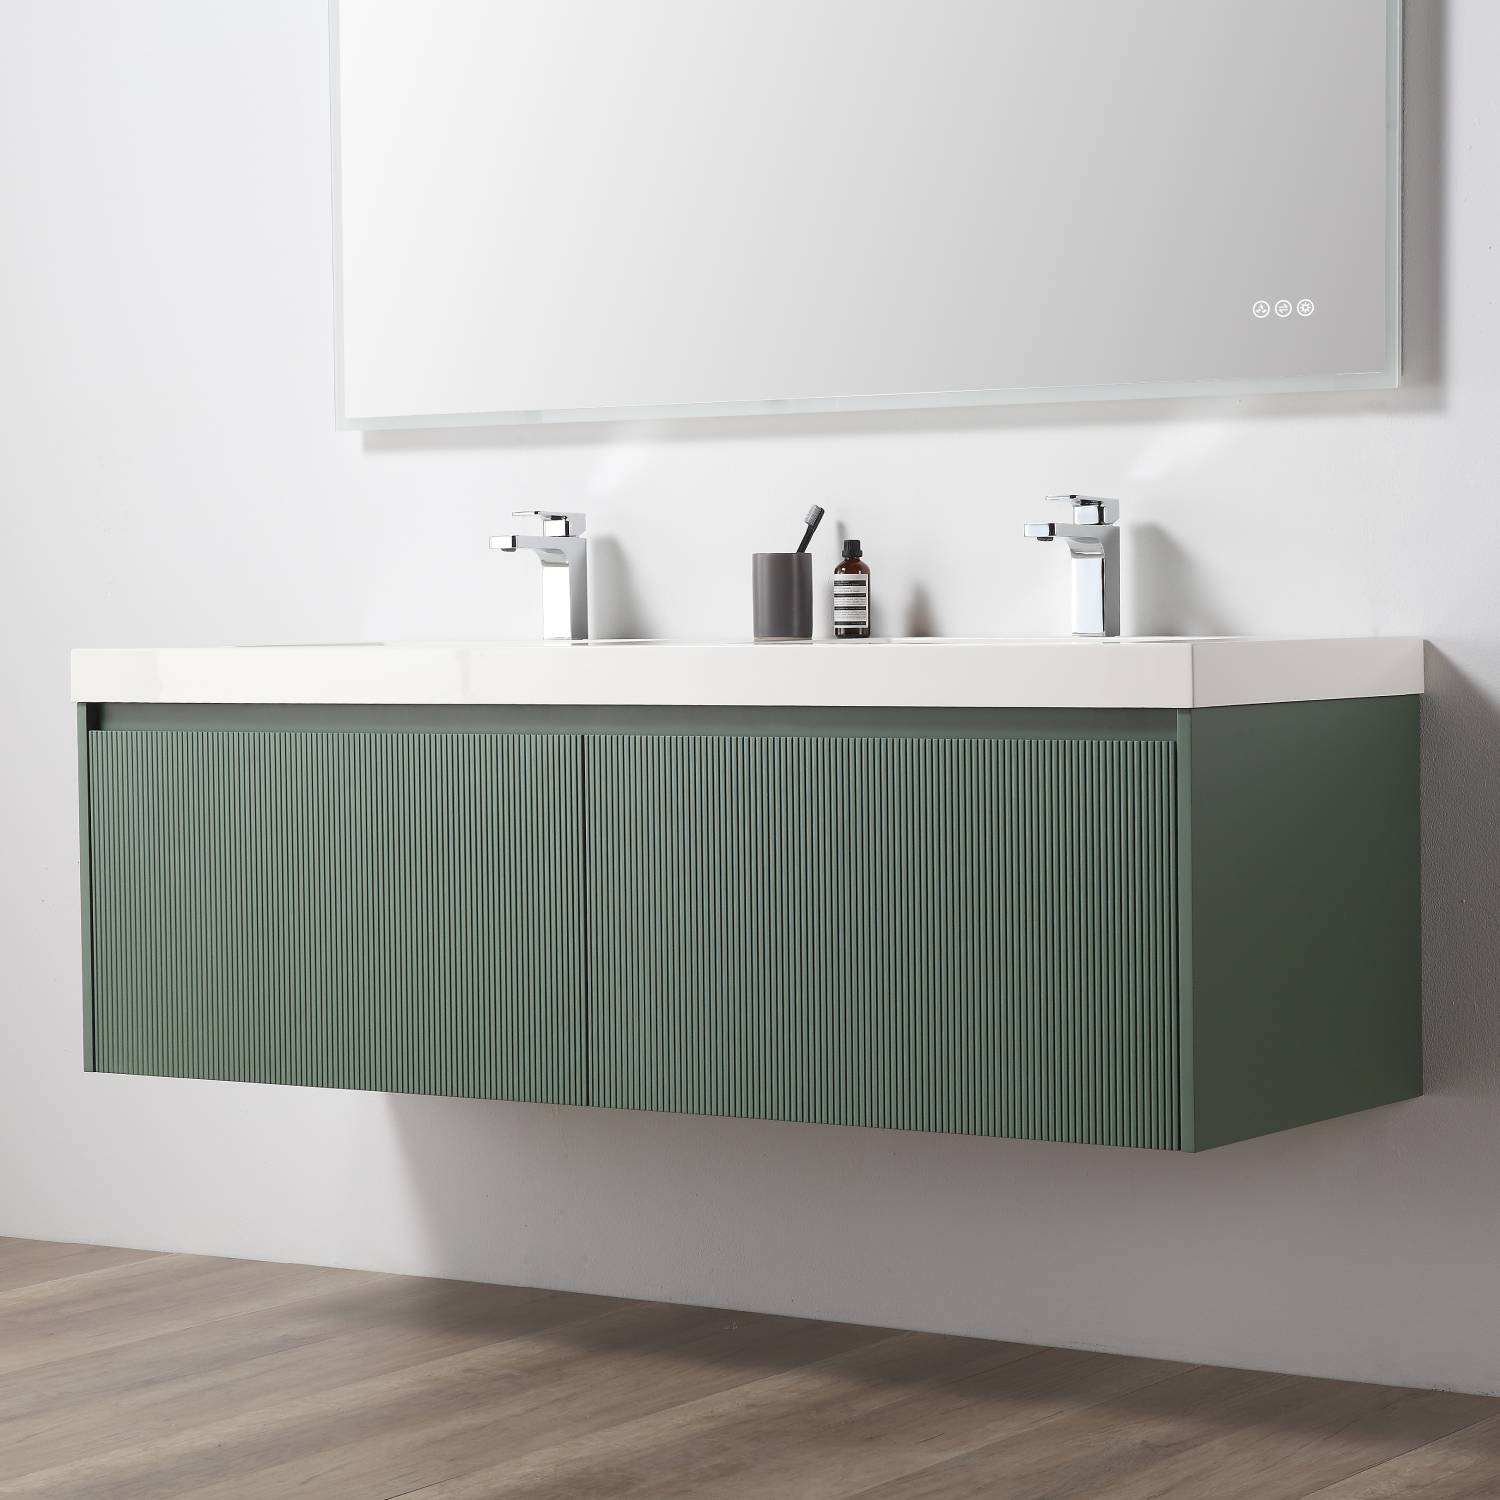 Positano 60" Luxury Double Bathroom Vanity with Acrylic Sink